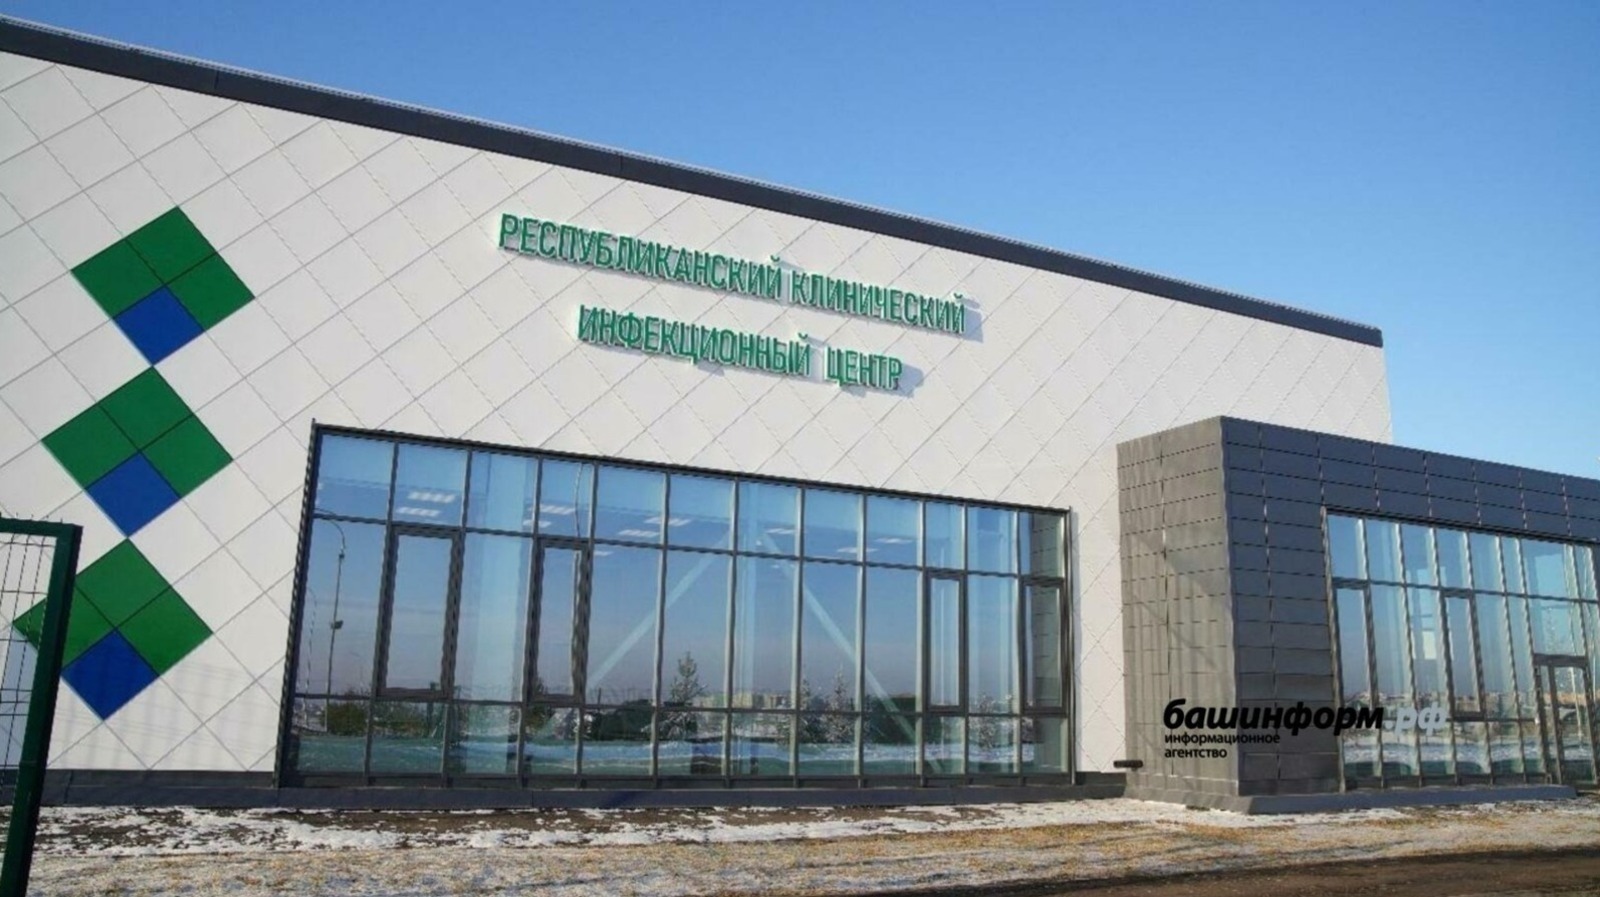 Число ковид-заболевших за сутки в Башкирии увеличилось до 20 человек